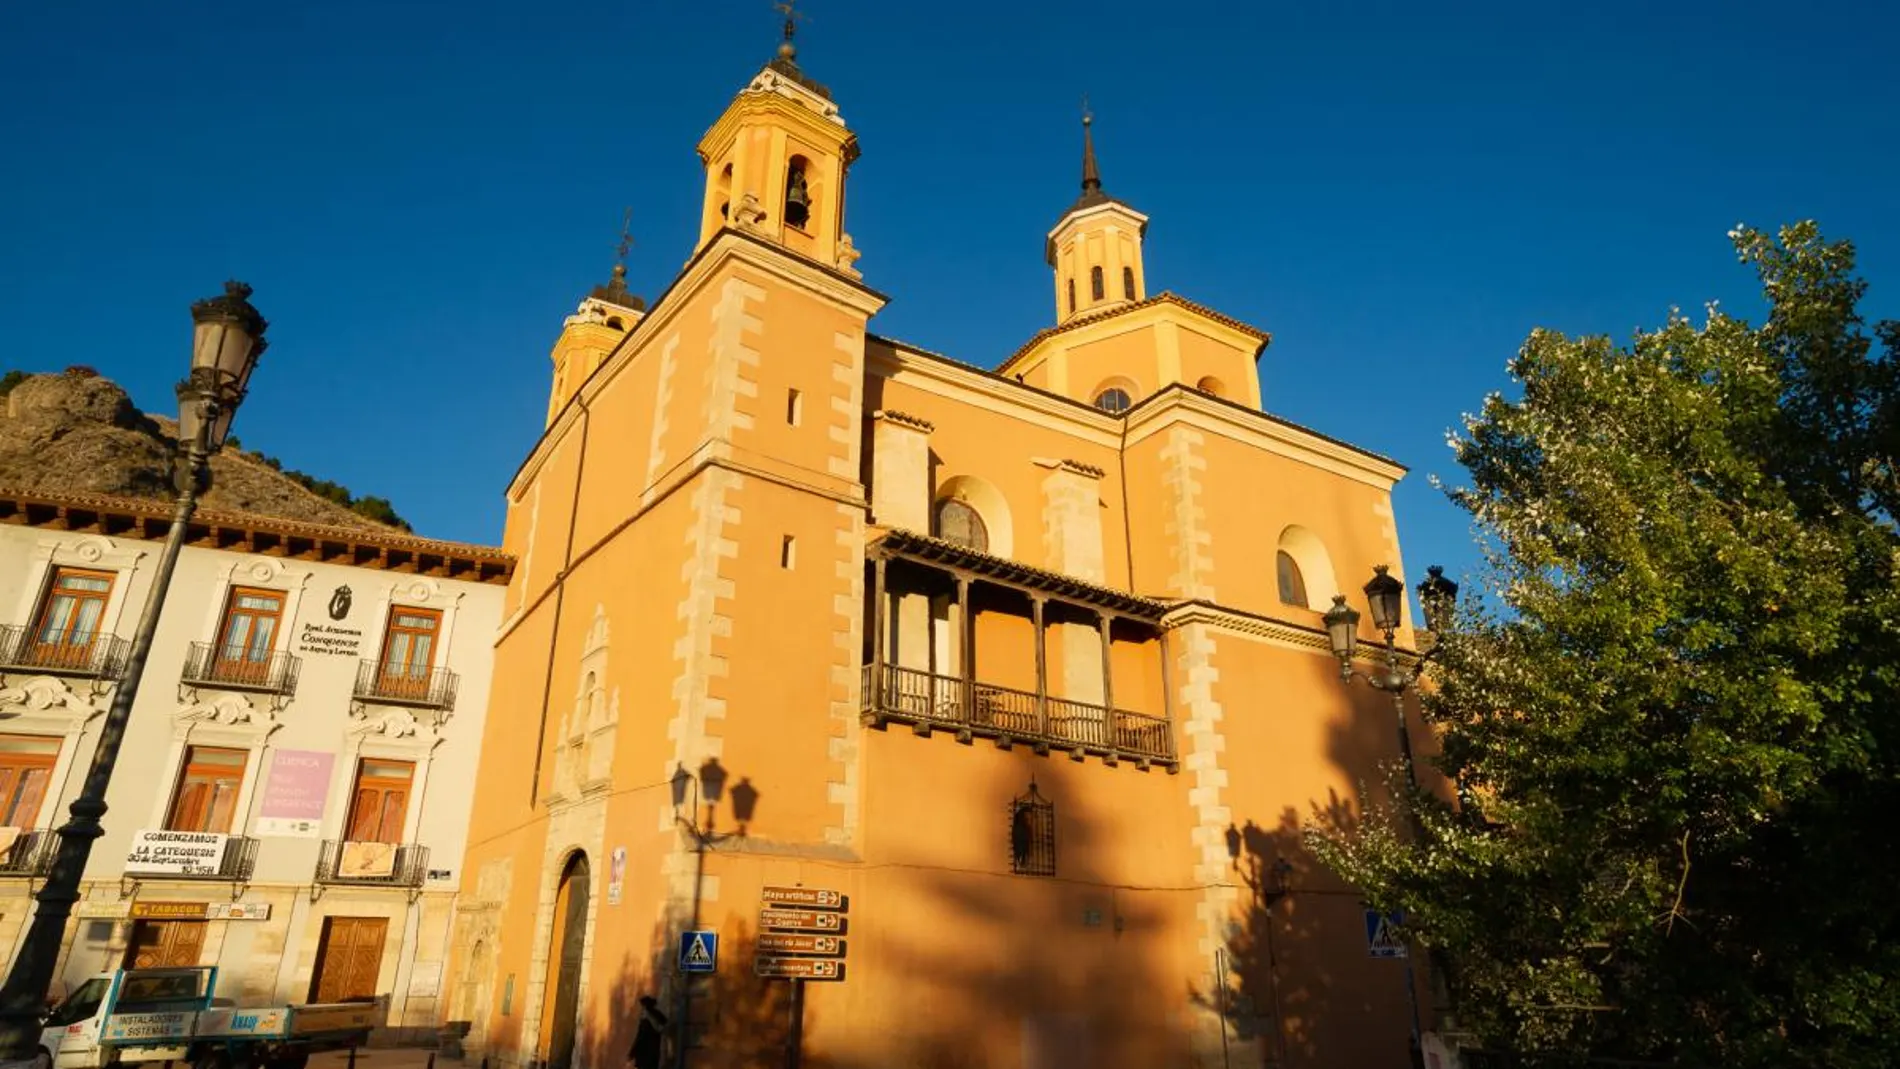 La Policía identifica a los miembros de una performance con culos al aire frente a la iglesia de la Virgen de la Luz en Cuenca